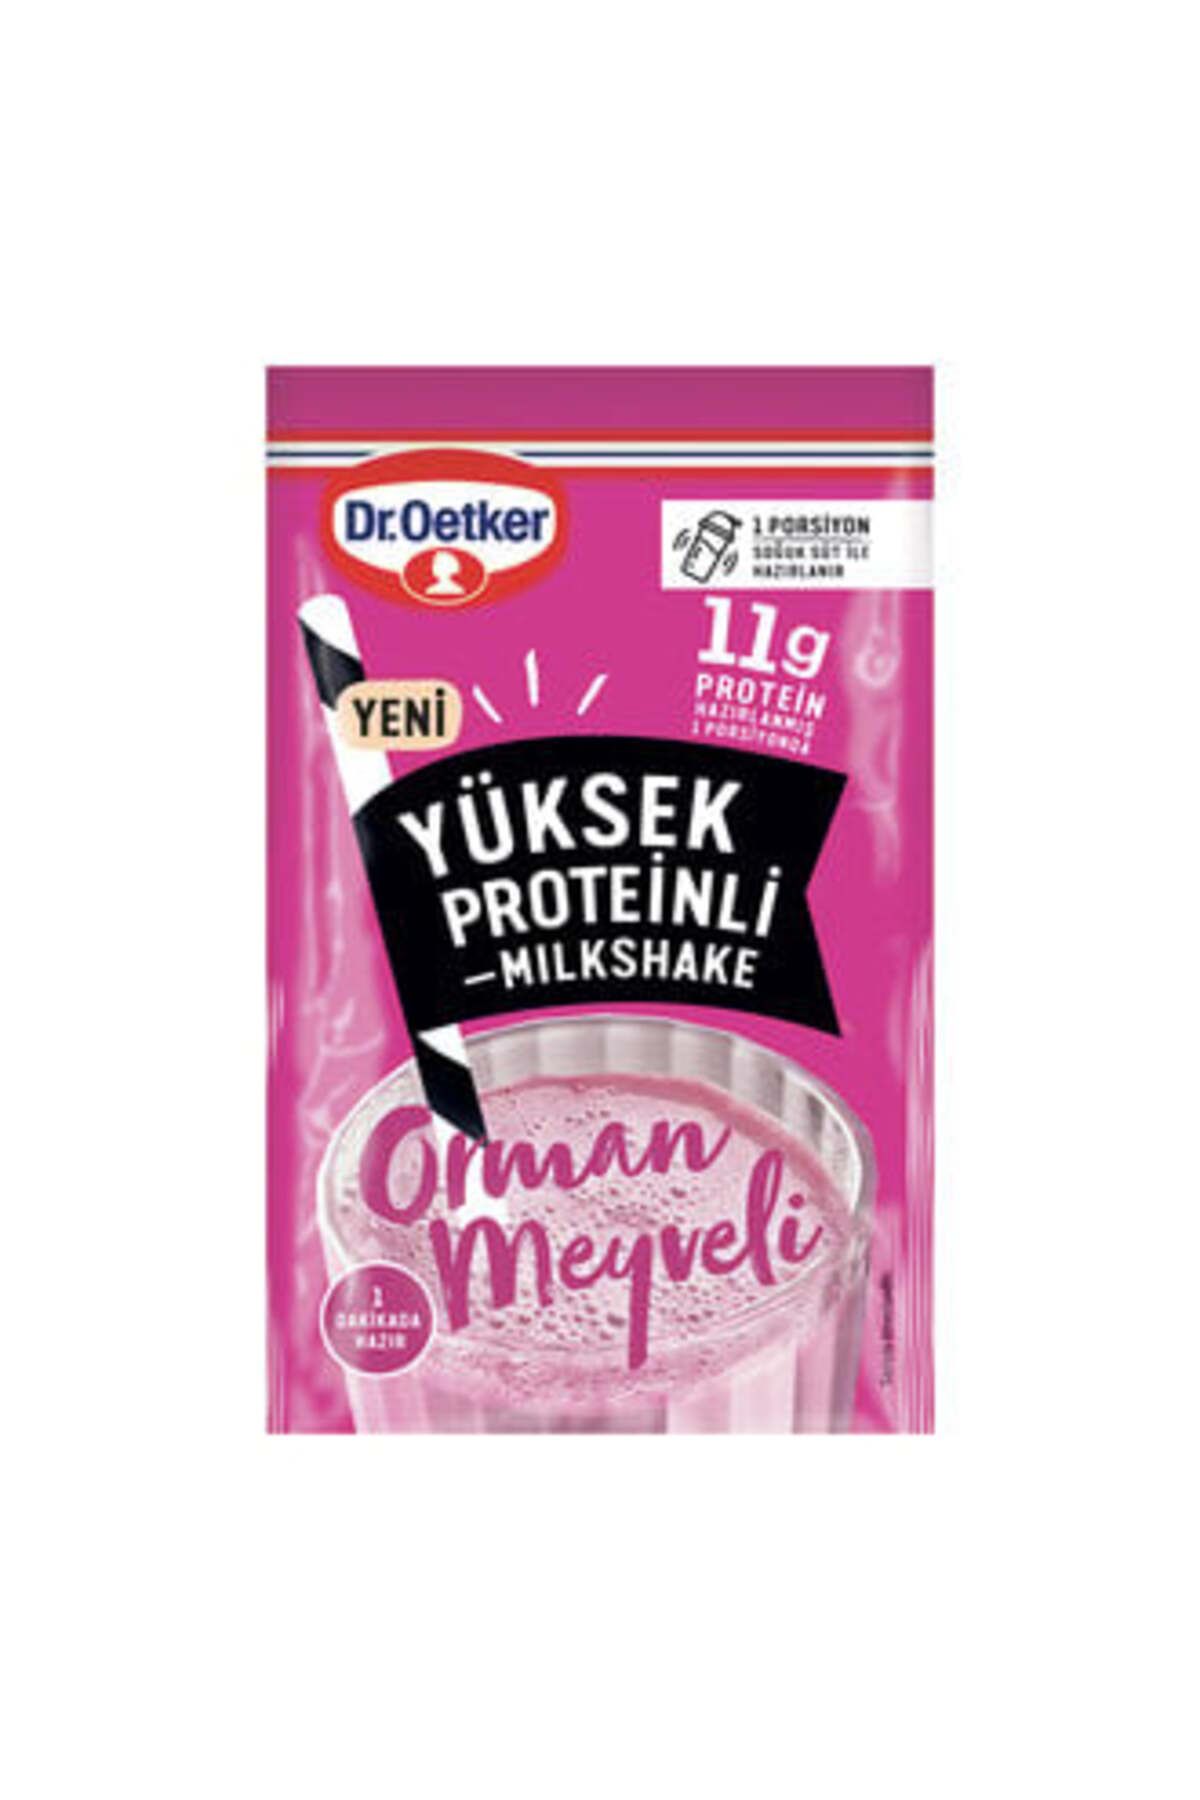 Dr. Oetker Dr.Oetker Orman Meyveli Yüksek Proteinli Milkshake 15 G ( 1 ADET )